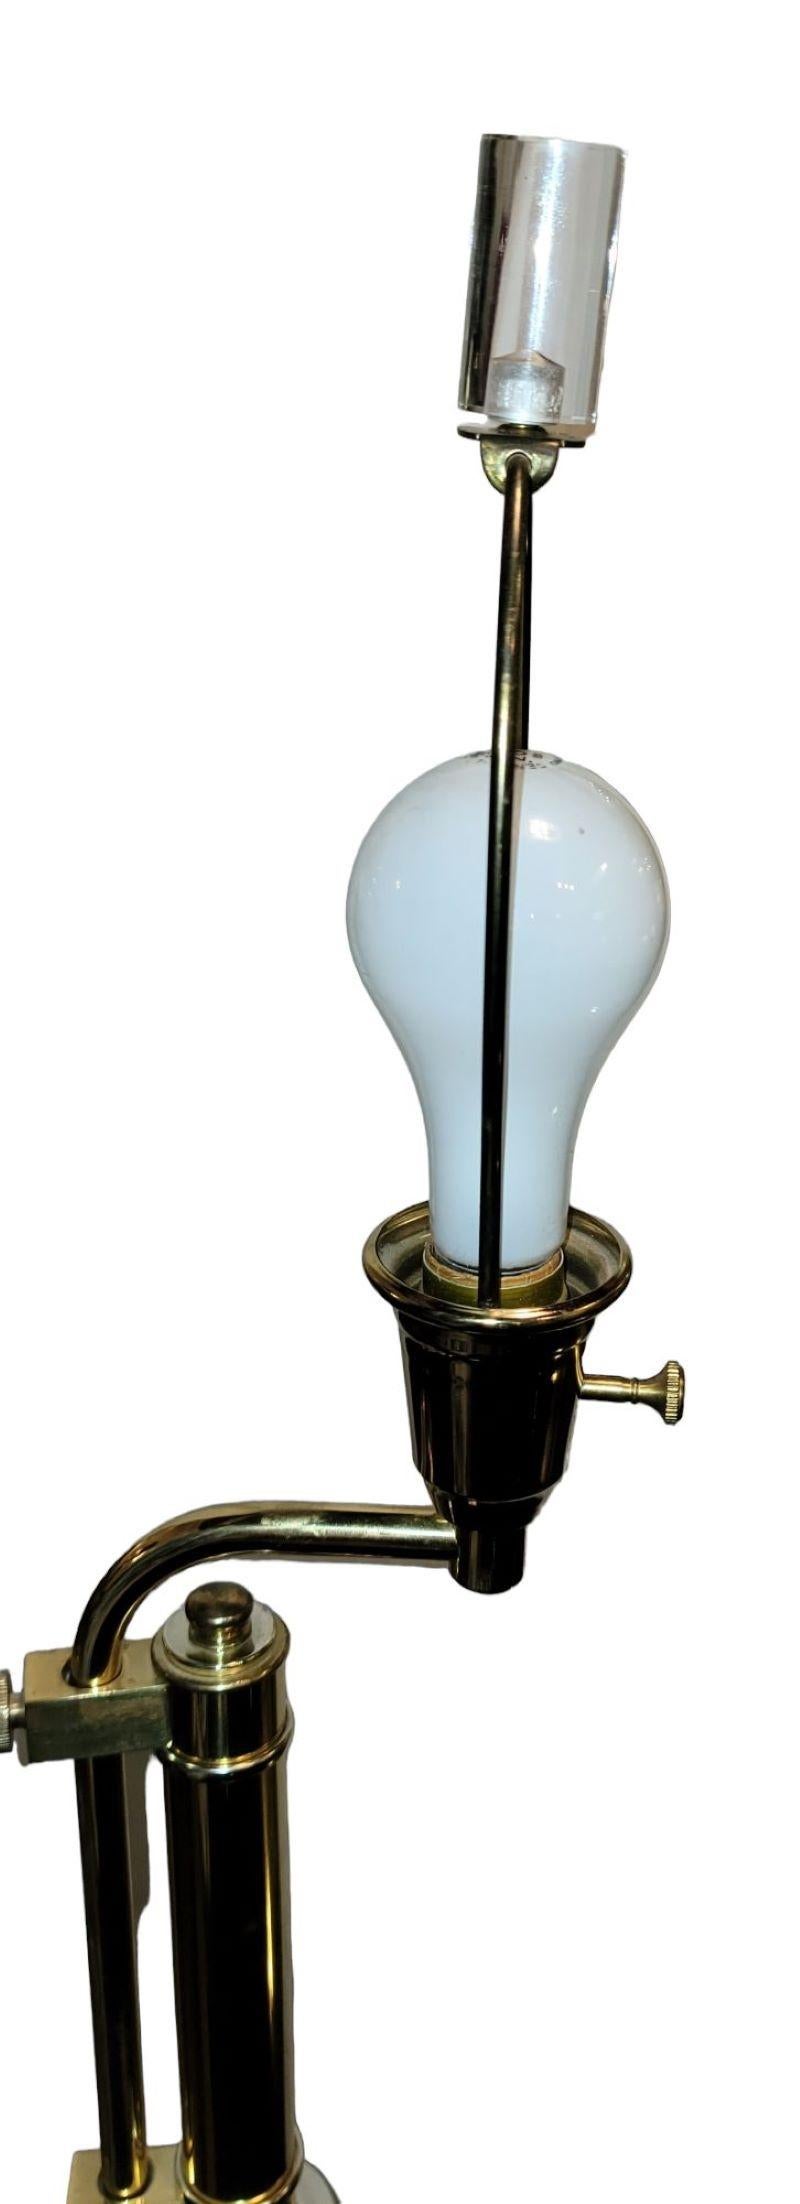 Lampe en Lucite avec accessoires en laiton de Charles Hollis Jones des années 1960. Ce lampadaire en Lucite offre une merveilleuse lumière rasante qui se reflète sur le cadre en Lucite. Le laiton brille sous l'effet de l'éclairage fourni par le